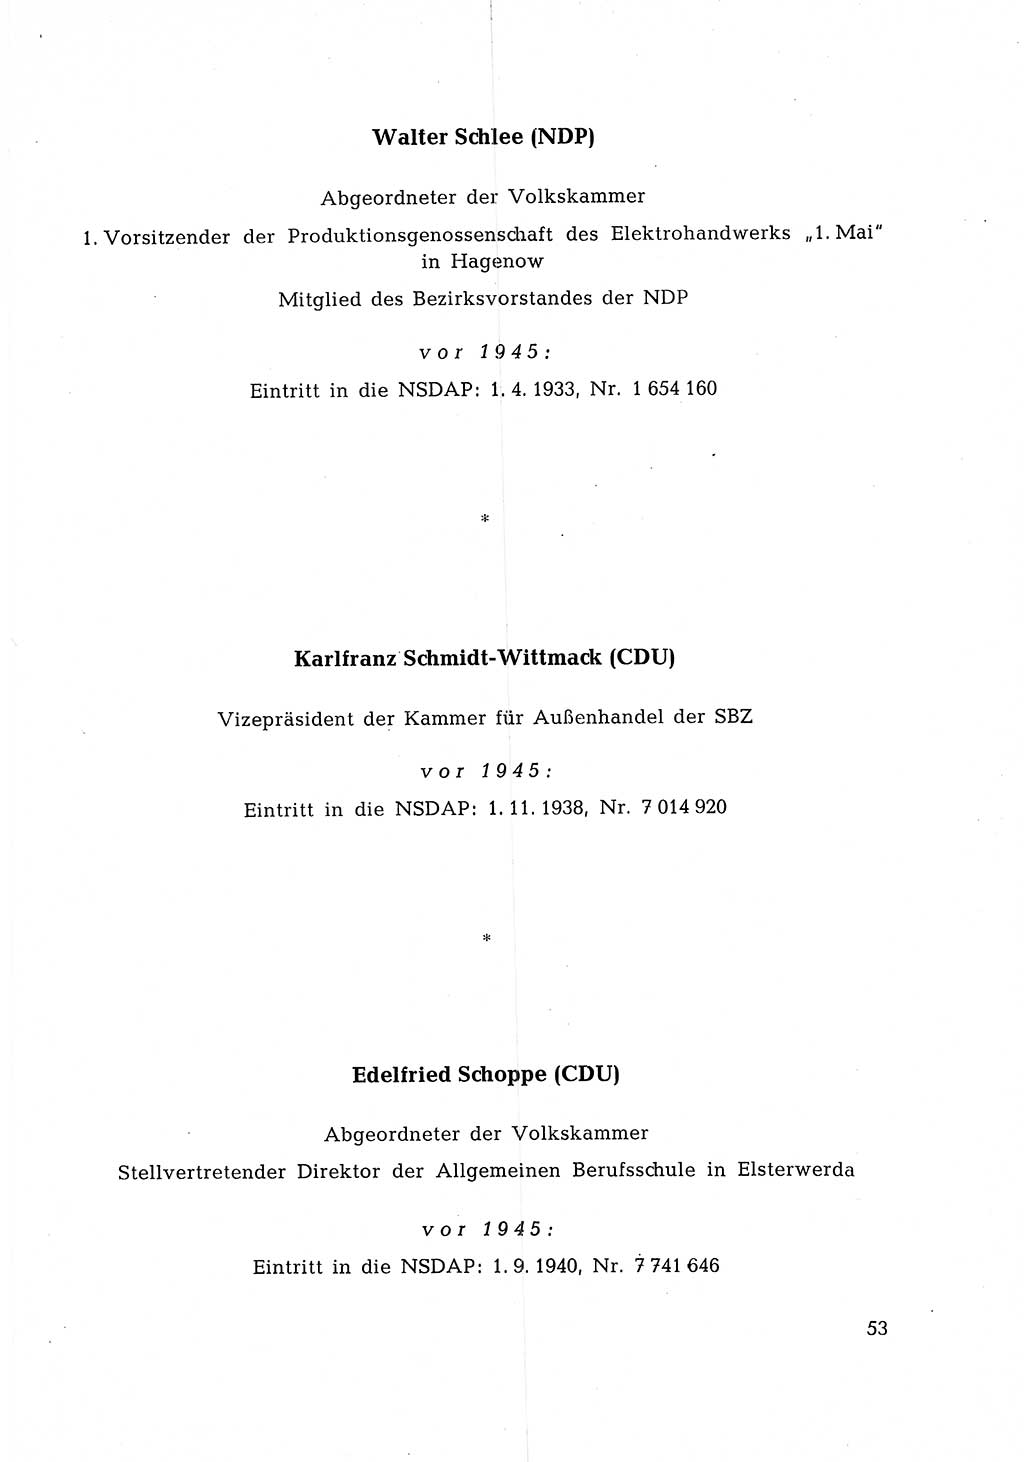 Ehemalige Nationalsozialisten in Pankows Diensten [Deutsche Demokratische Republik (DDR)] 1965, Seite 53 (Ehem. Nat.-Soz. DDR 1965, S. 53)